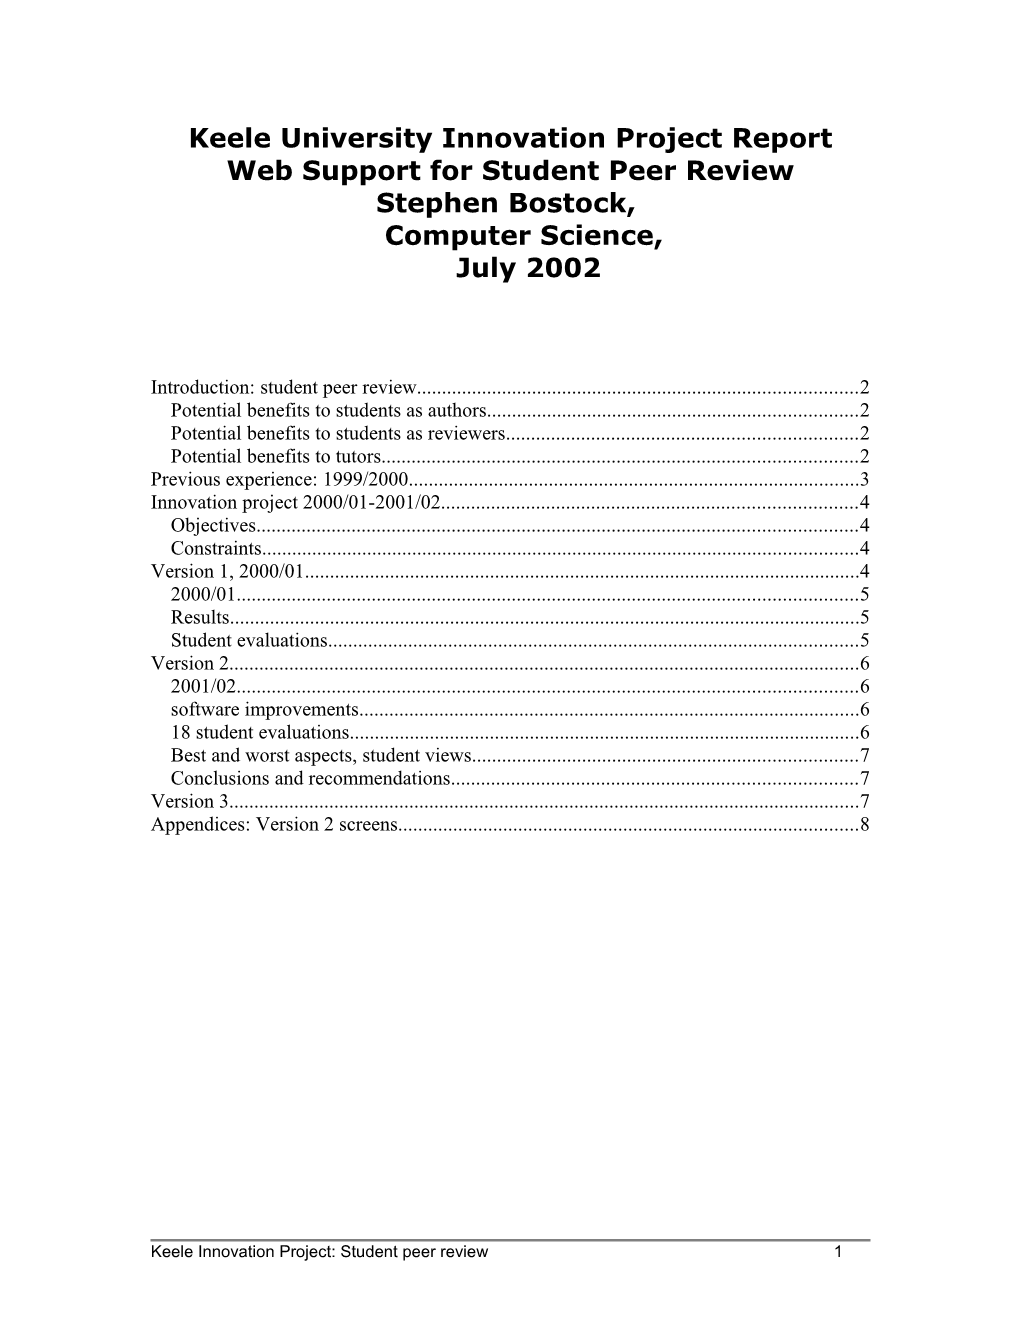 Web Based Peer Review